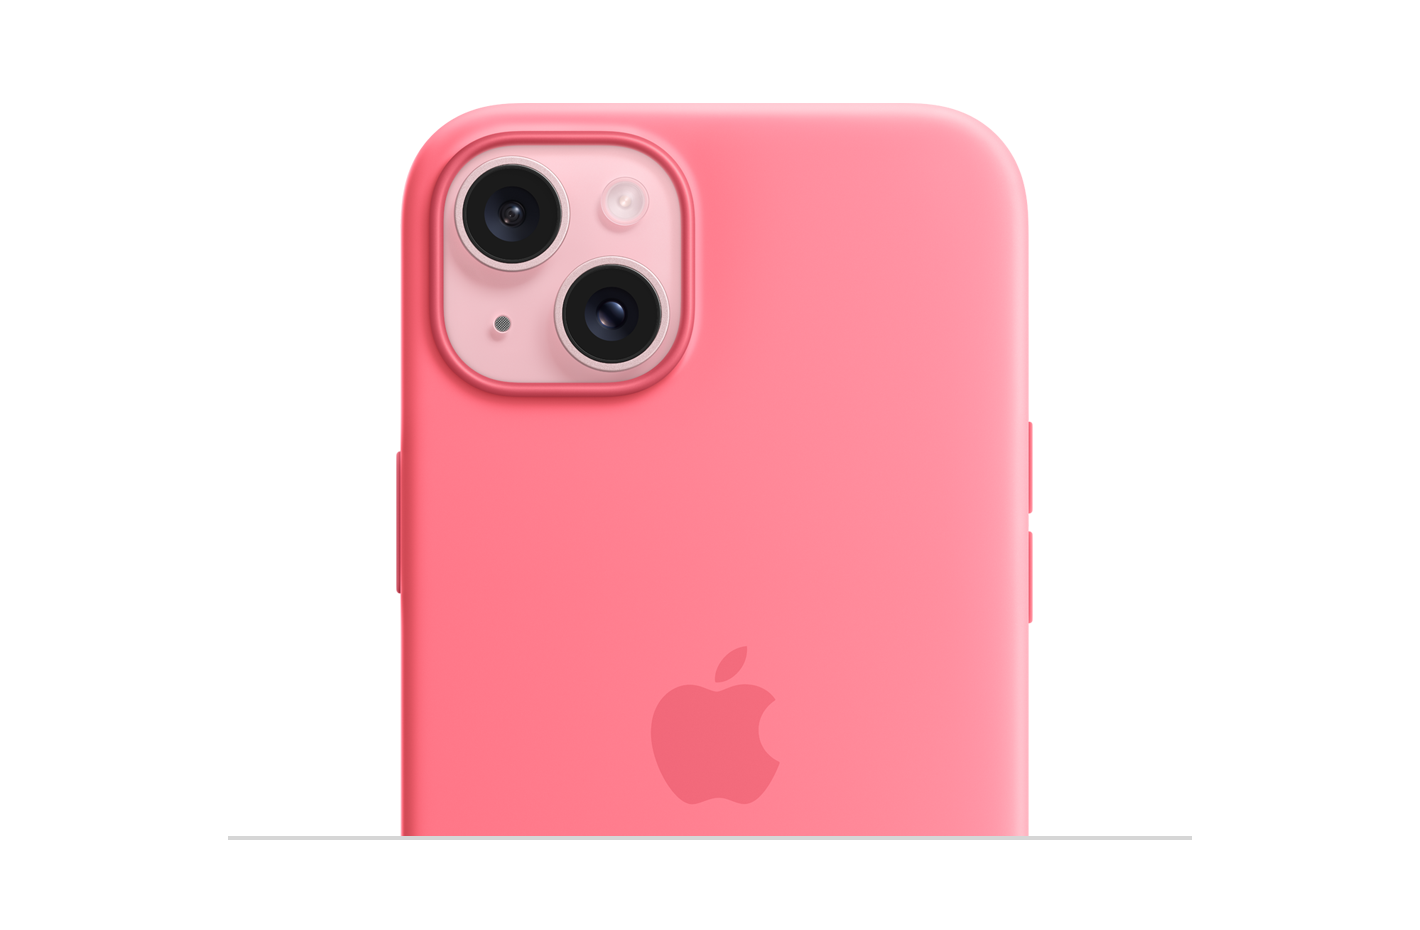 Capa de silicone rosa com MagSafe, com logotipo da Apple gravado no centro, encaixada no iPhone 15 rosa, com recorte para câmera.